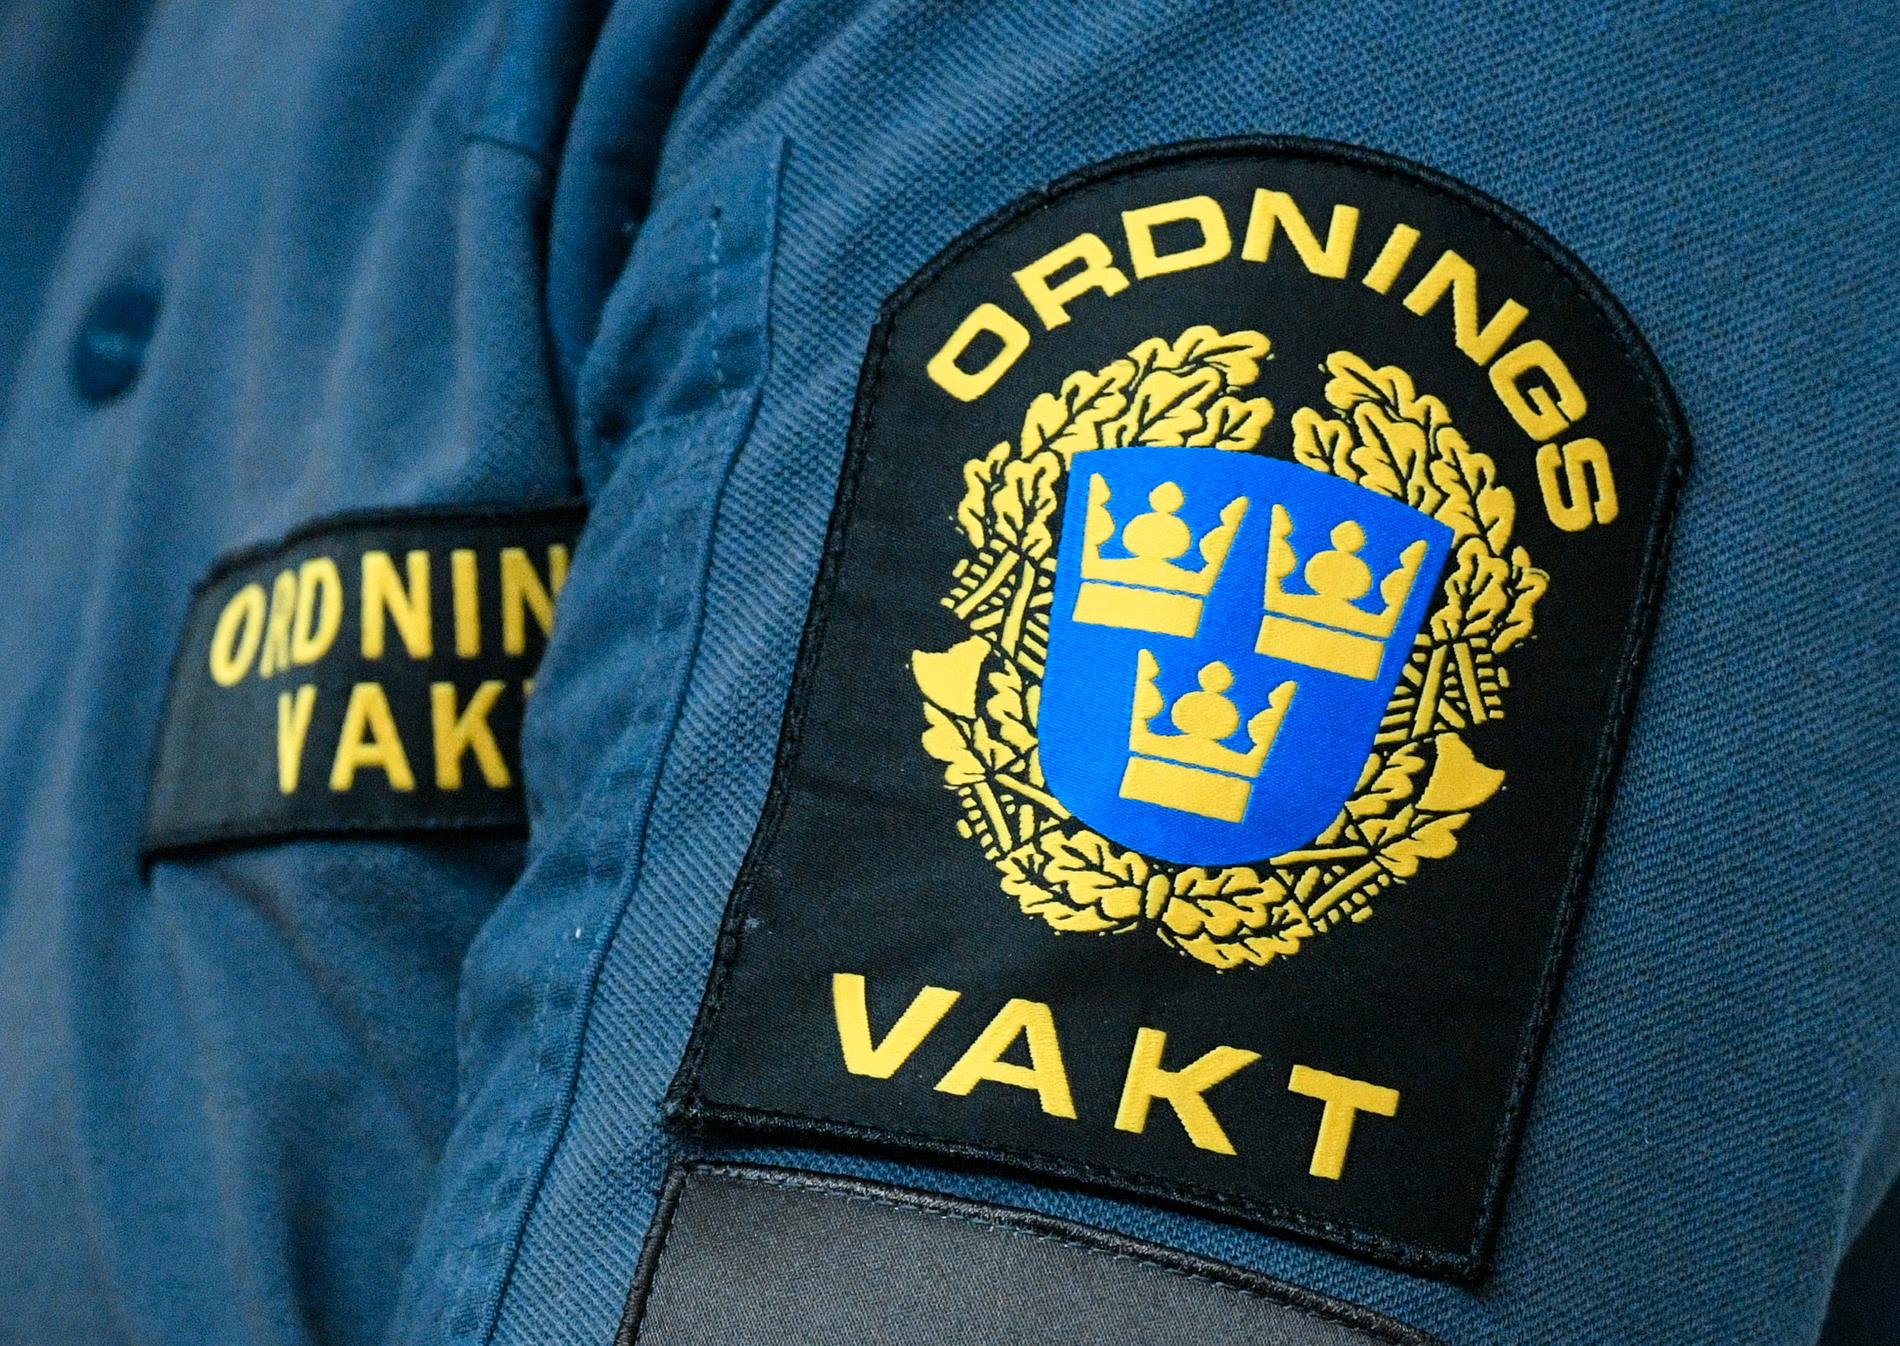 En ordningsvakt åtalas för att ha misshandlat och hotat en kollega på Skatteverket i Stockholm.